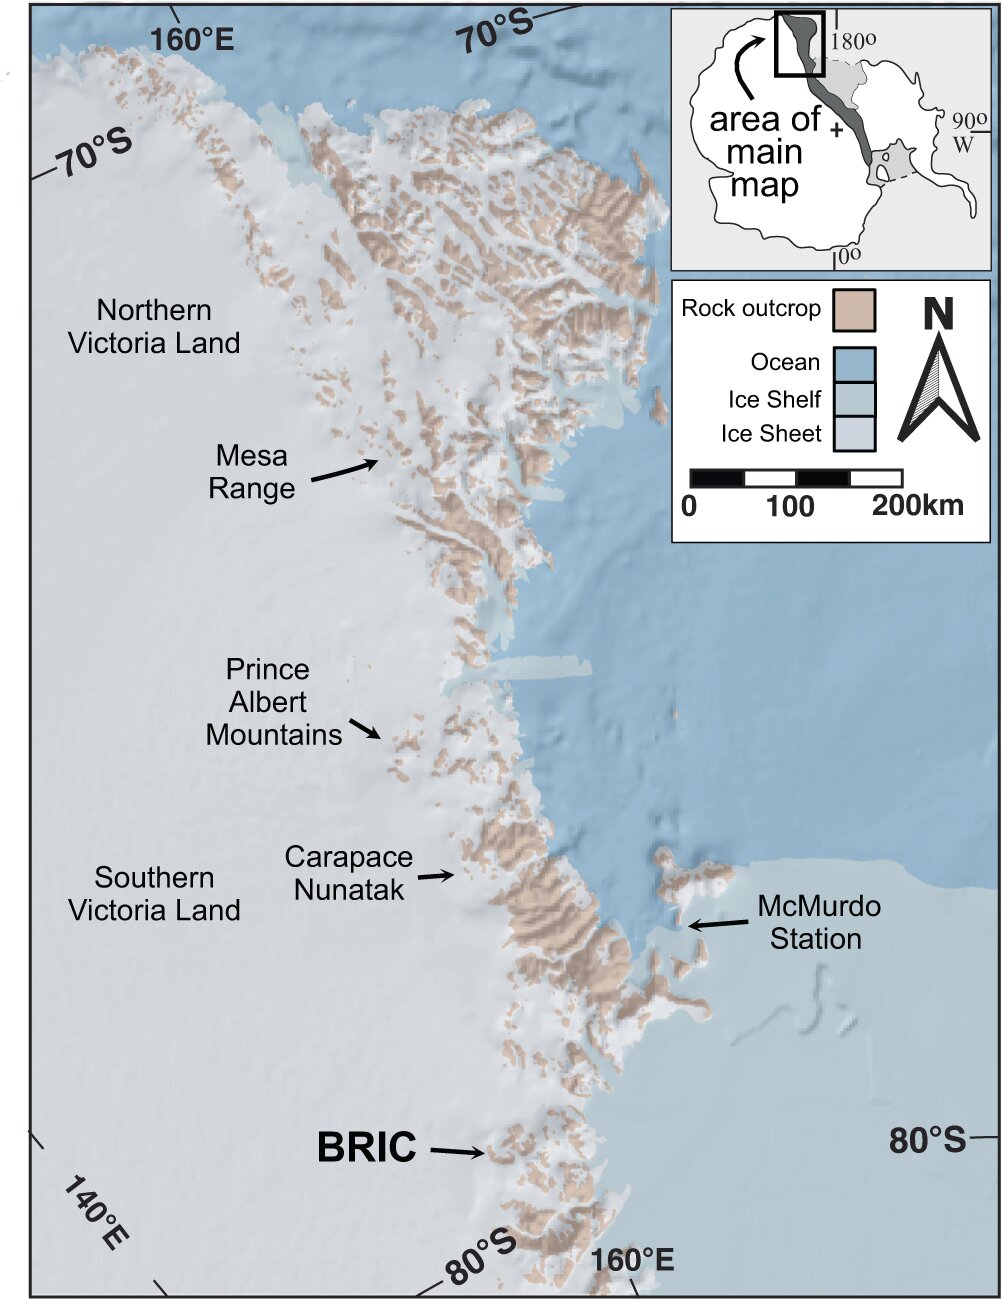 L’équipe de recherche confirme l’existence de conditions glaciaires dans la région antarctique à la fin du Crétacé